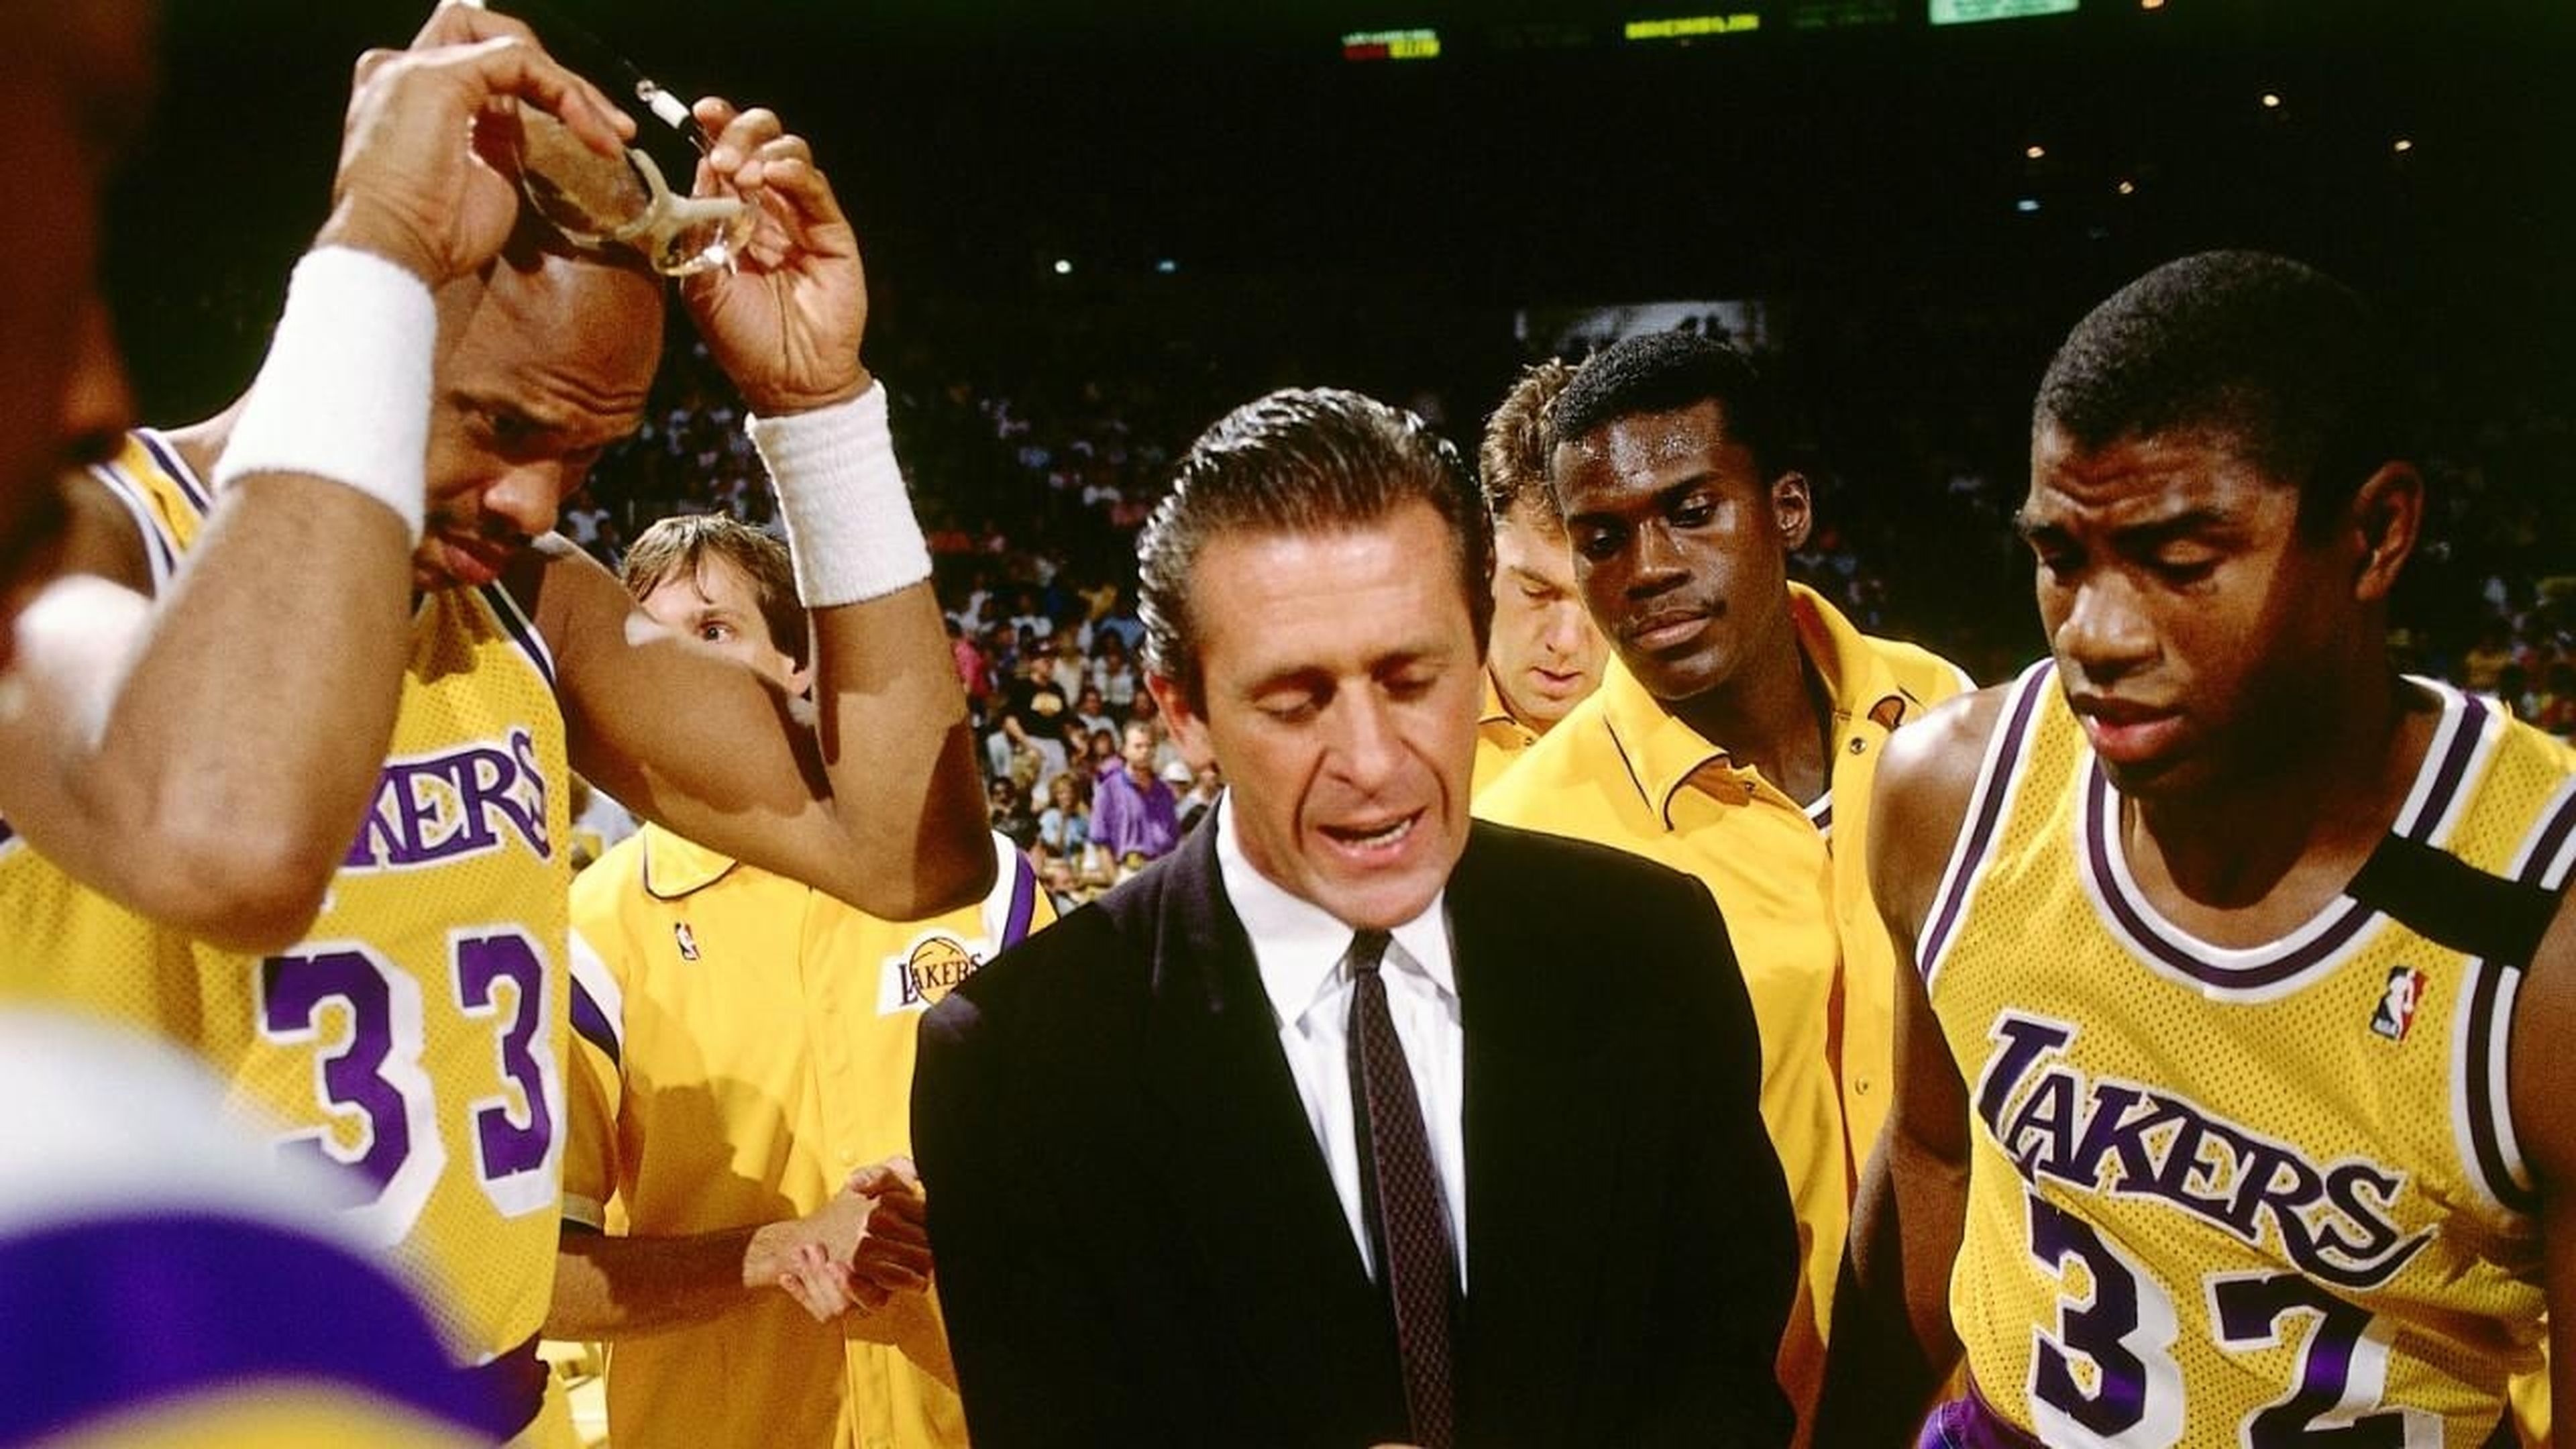 La serie de HBO sobre los míticos Lakers de los años 80 ya tiene a su primer actor. Jason Clarke interpretará a la leyenda Jerry West. Comenzará a rodarse en breve.